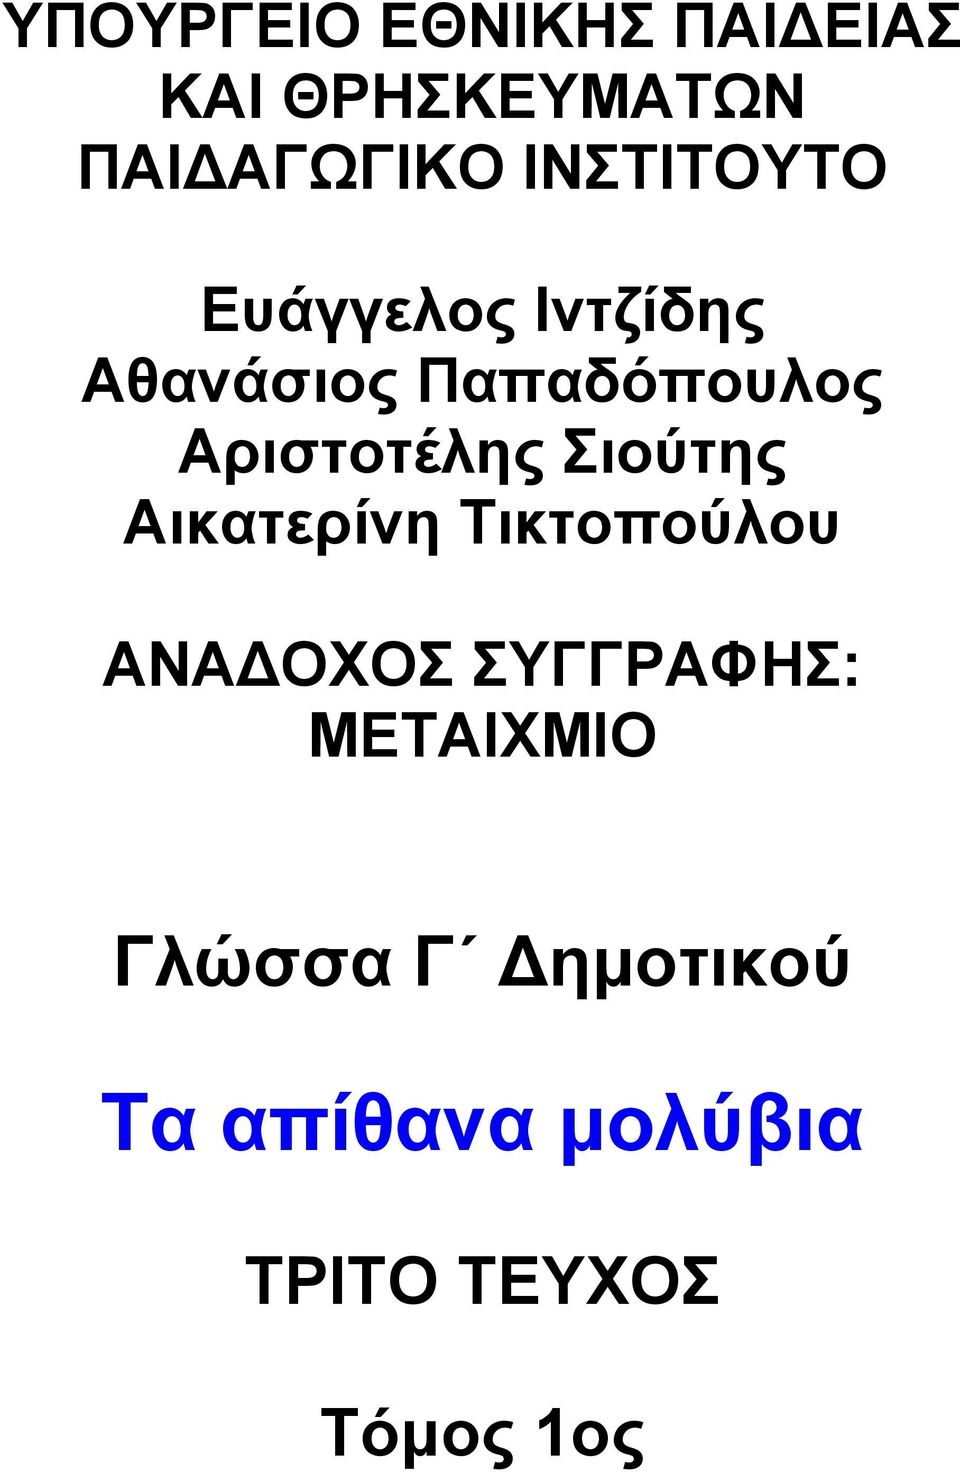 Αριστοτέλης Σιούτης Αικατερίνη Τικτοπούλου ΑΝΑ ΟΧΟΣ